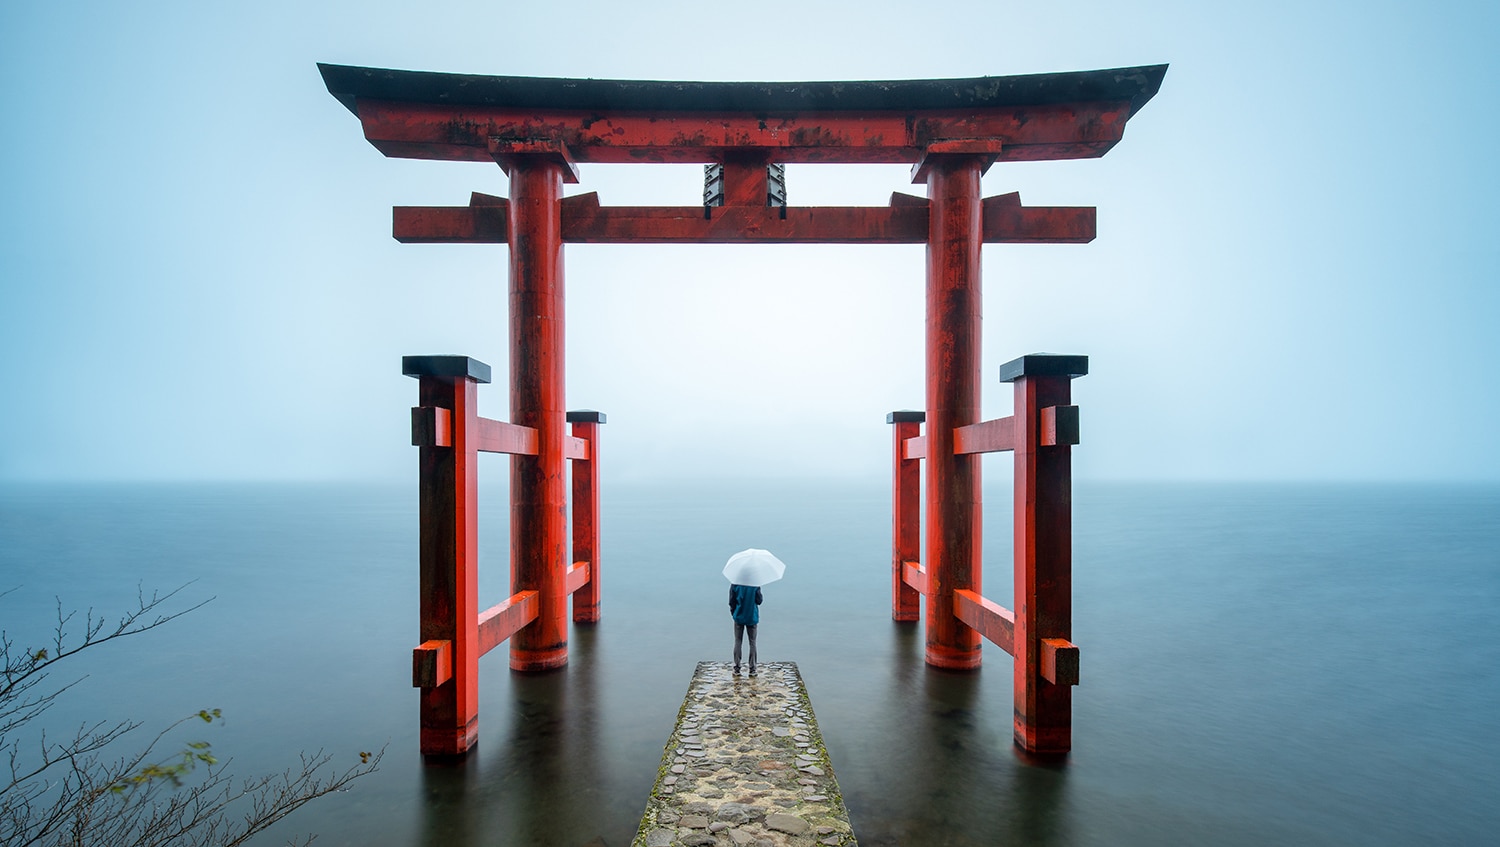 Torii gate at Hakone Shrine, Lake Hakone